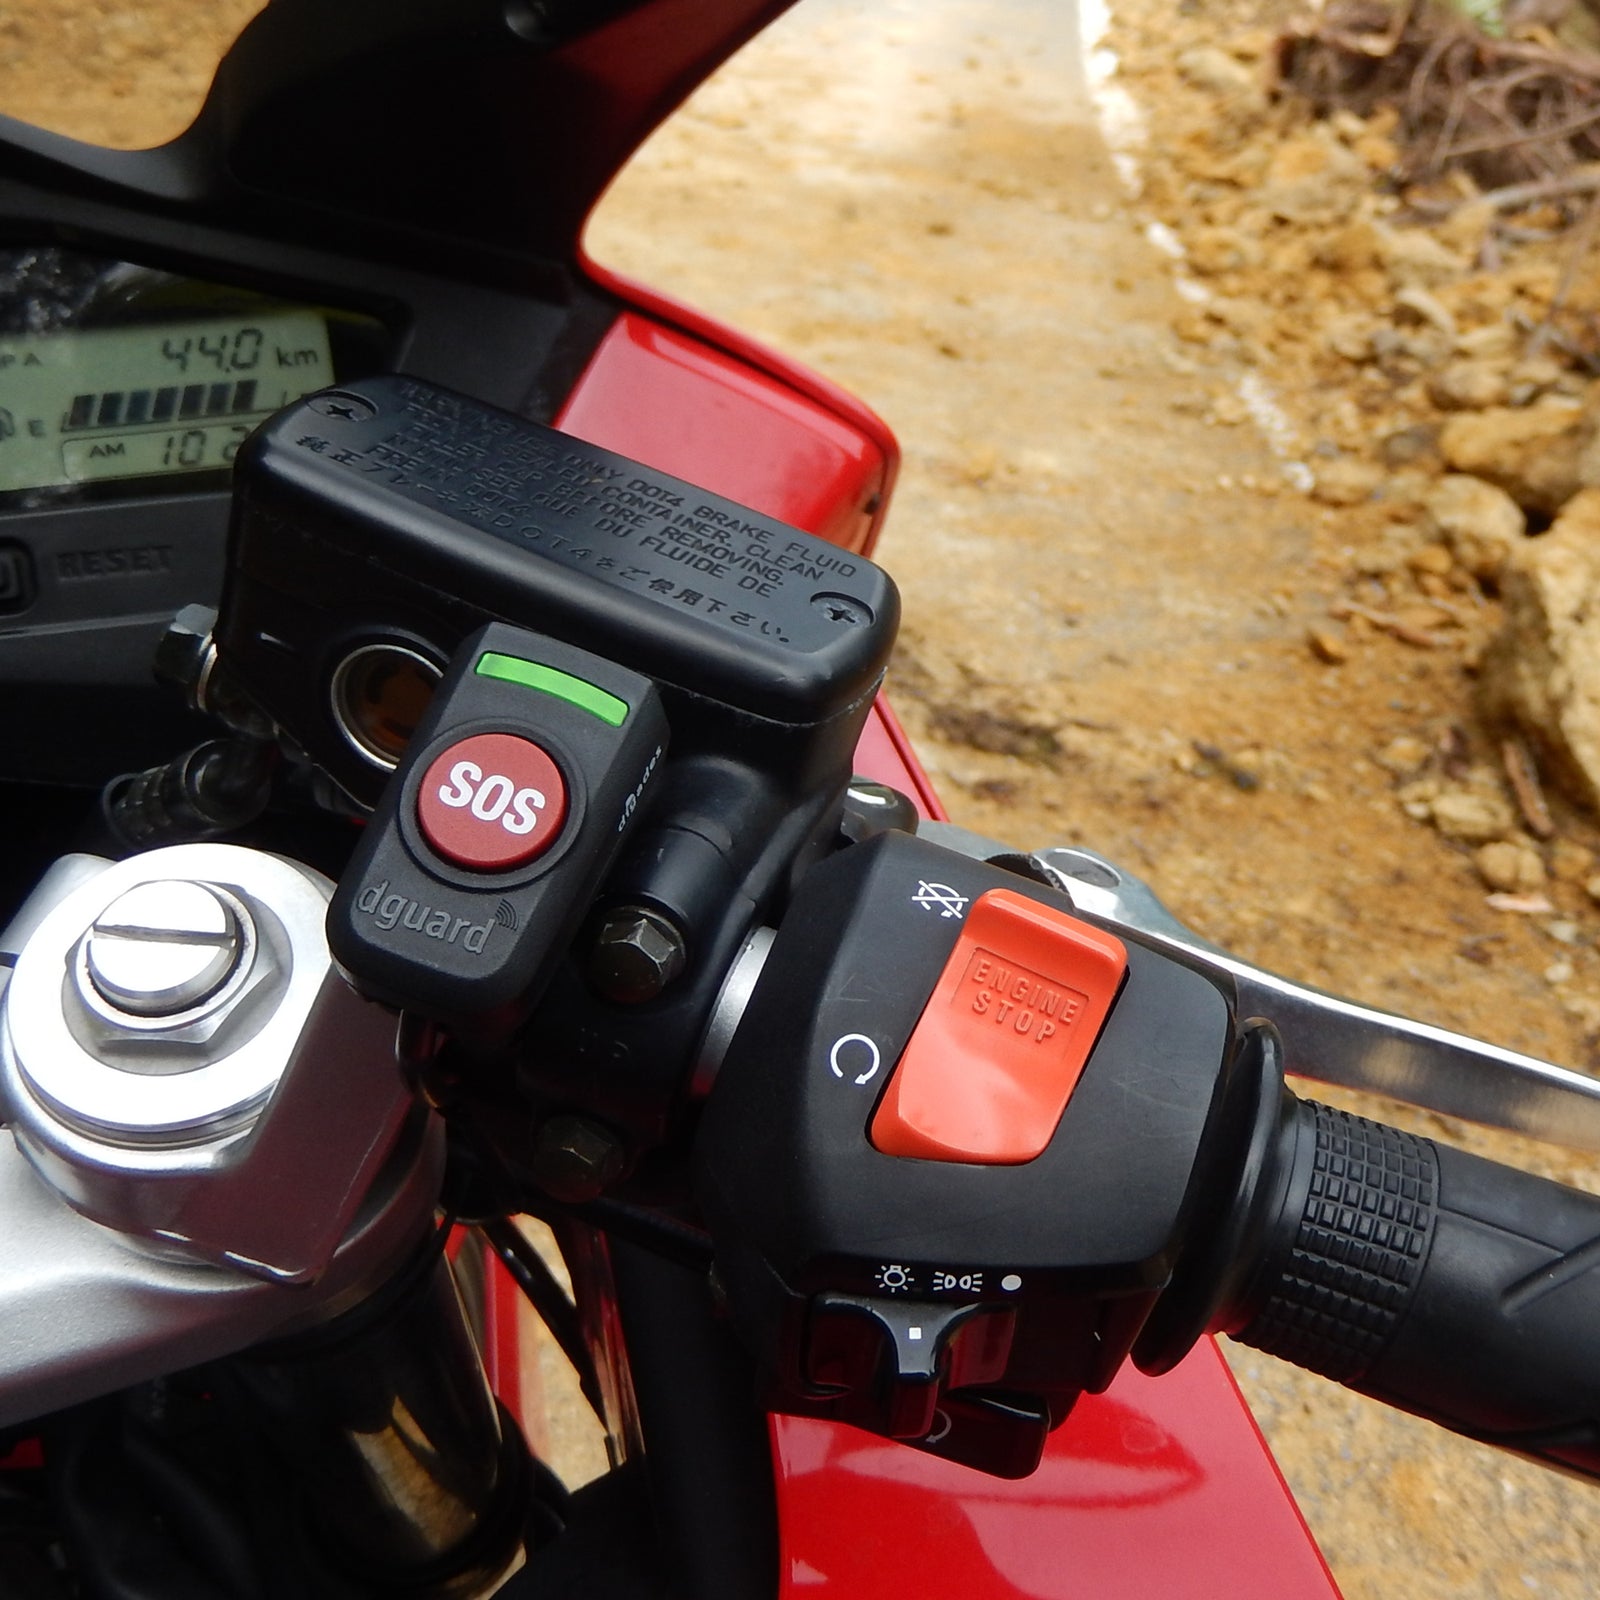 Der dguard Taster wird am Lenker eines Motorrads befestigt und beschränkt mit einem lediglichem Gewicht von 45g den Motorradfahrer nicht.